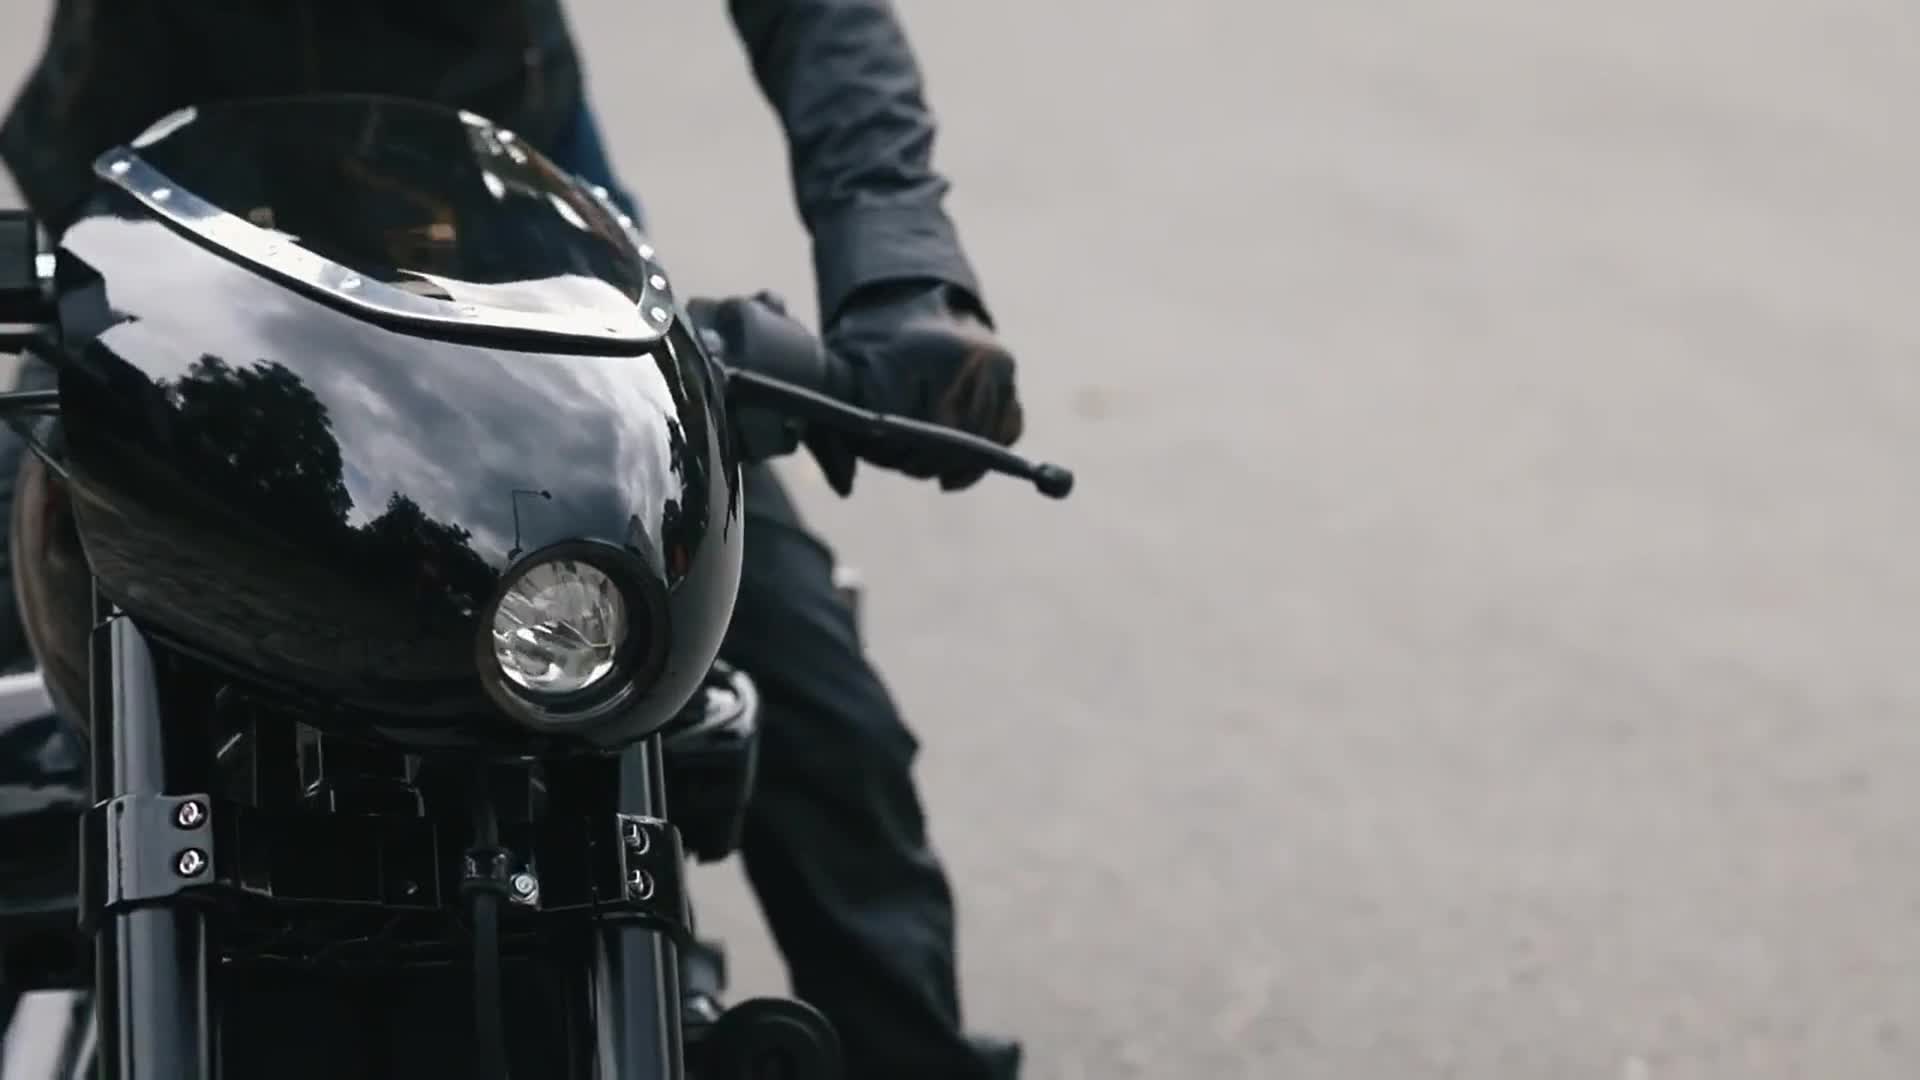 Bandit9 Dark Side Motorcycle